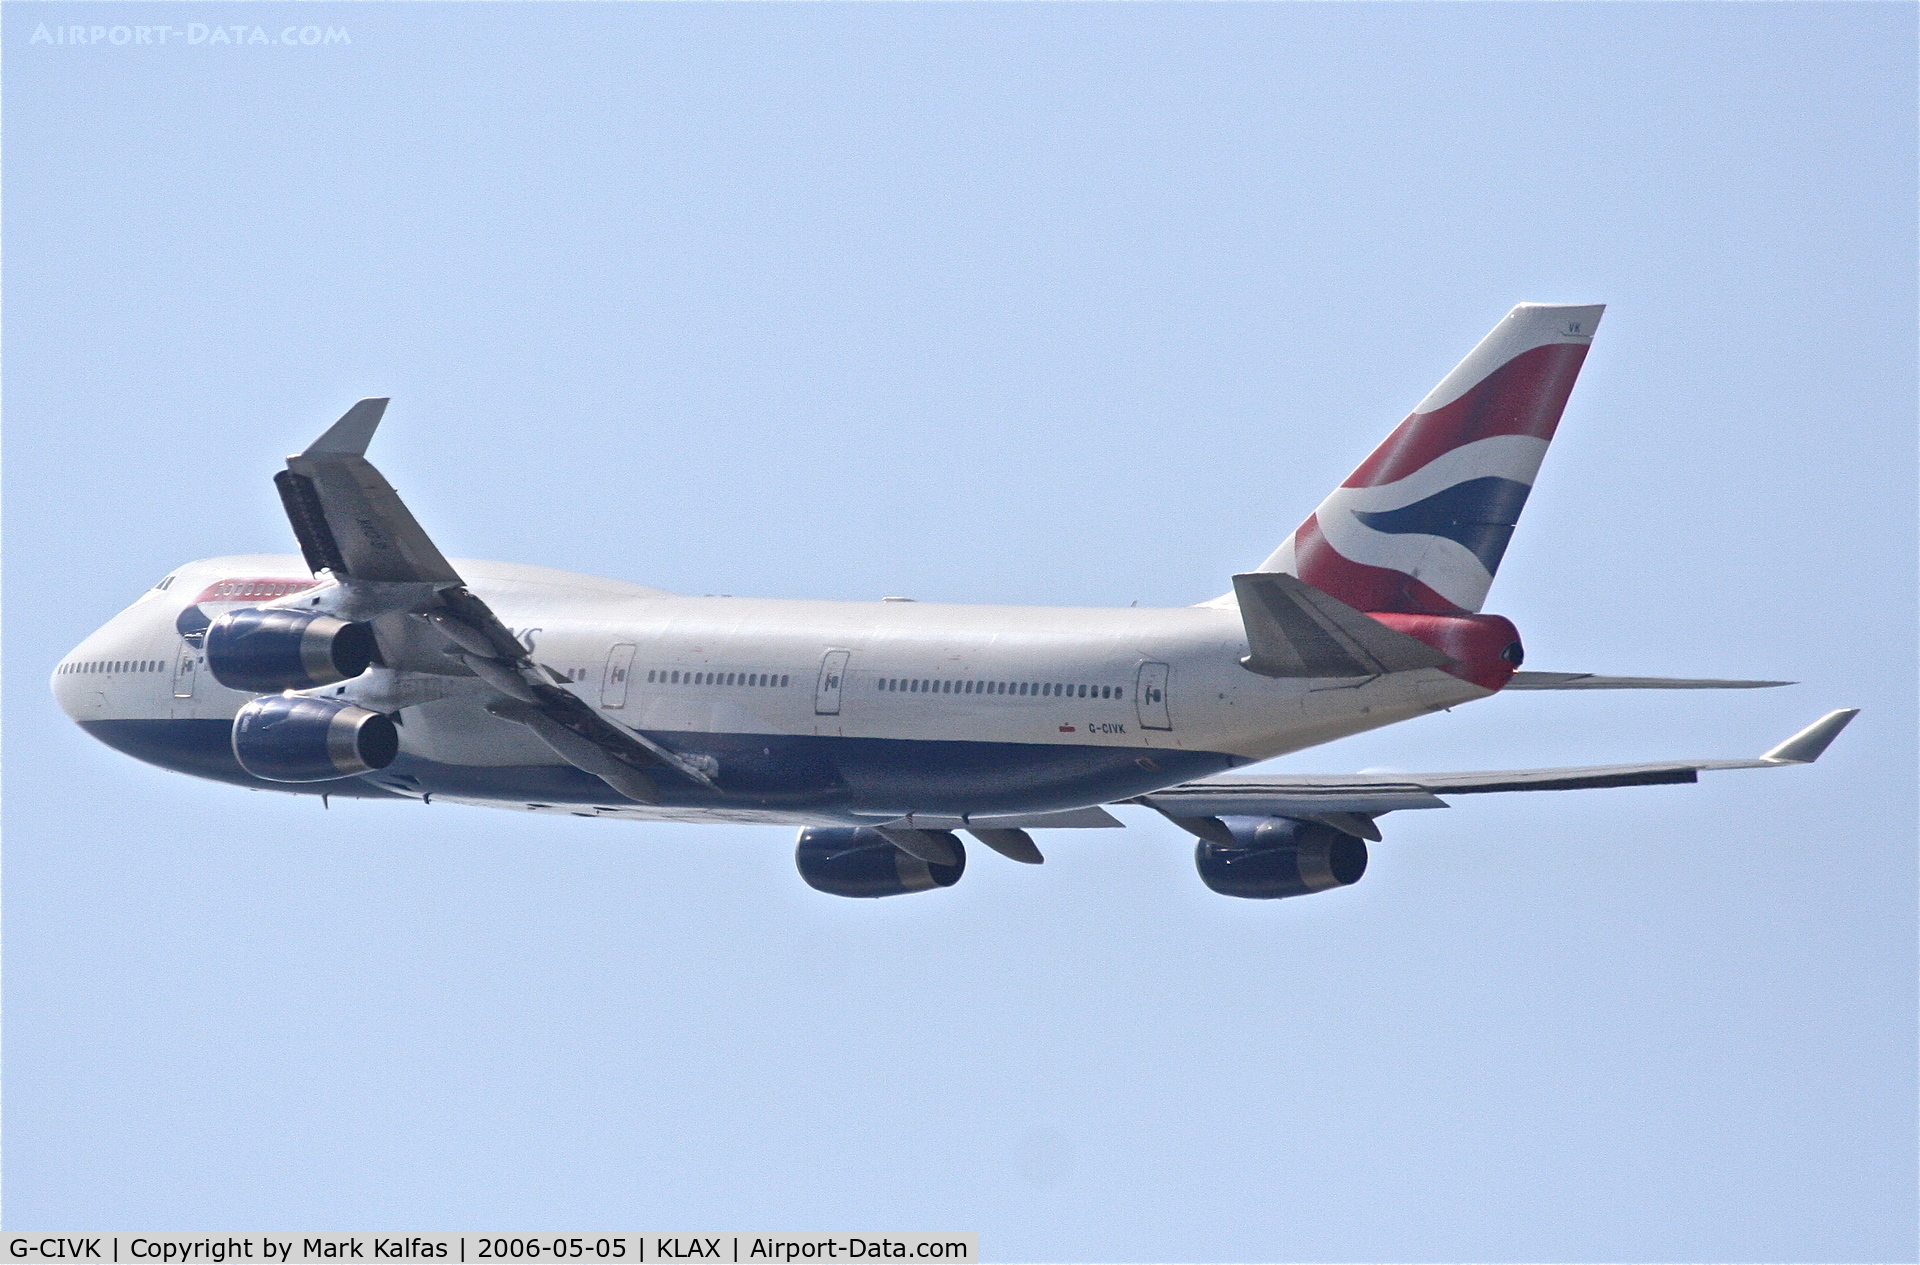 G-CIVK, 1997 Boeing 747-436 C/N 25818, British Airways Boeing 747-436, G-CIVK departing KLAX 25R for London